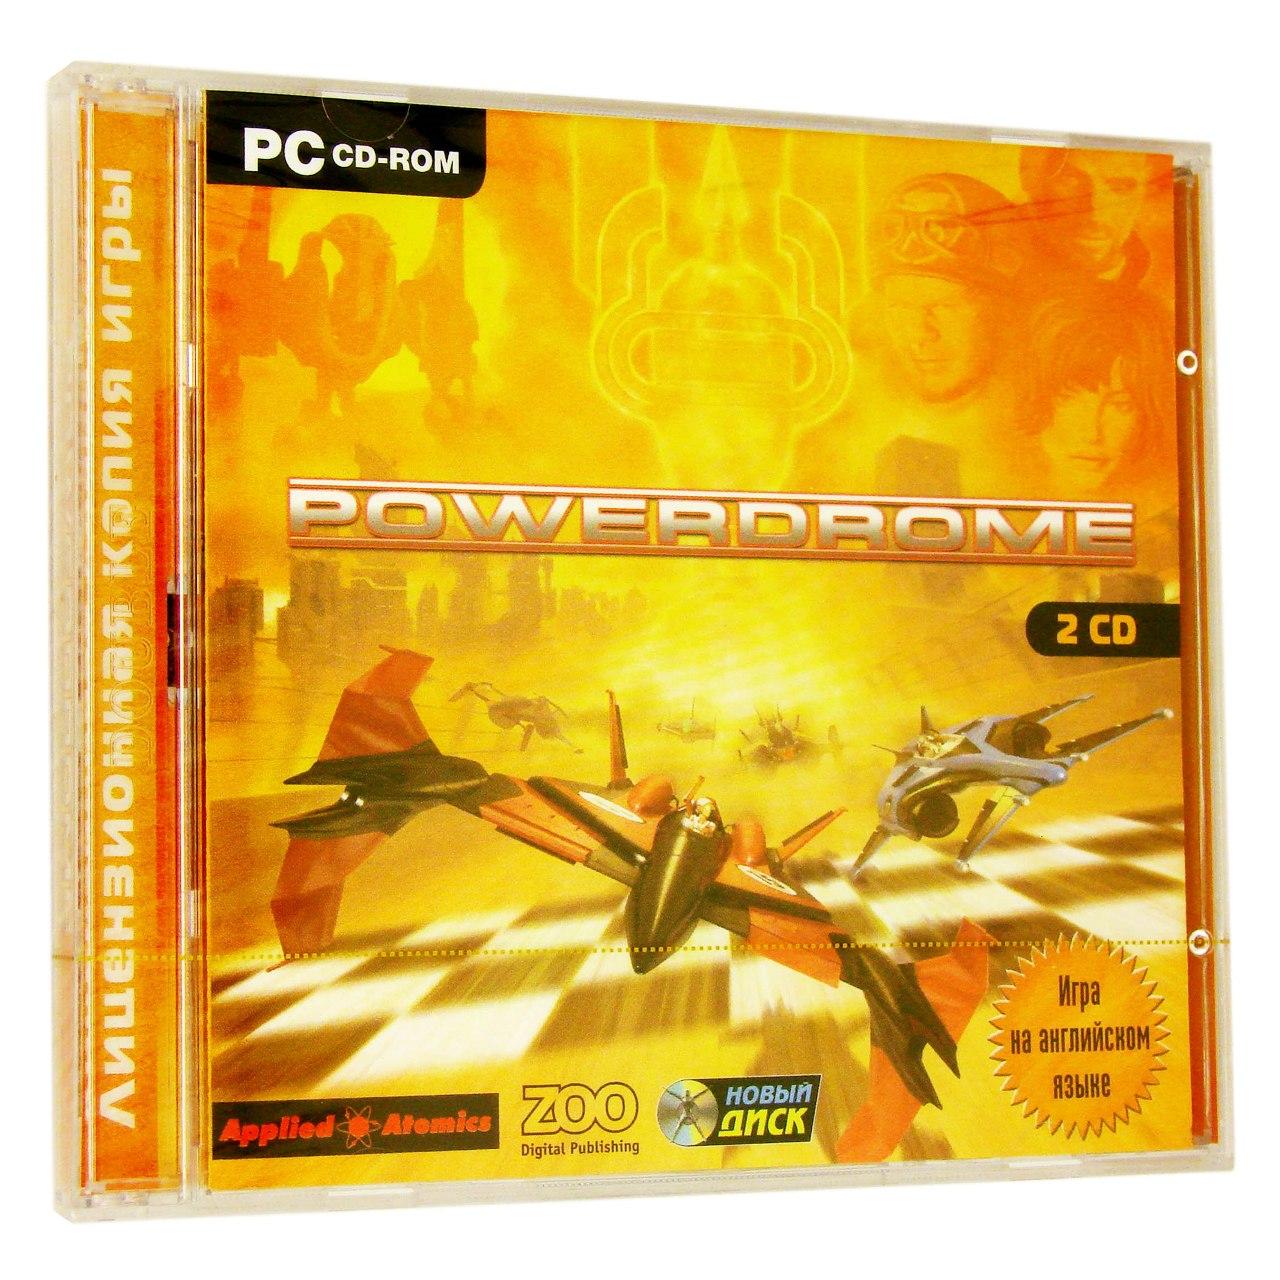 Компьютерный компакт-диск Powerdrom (PC), фирма "Новый диск", 2 CD